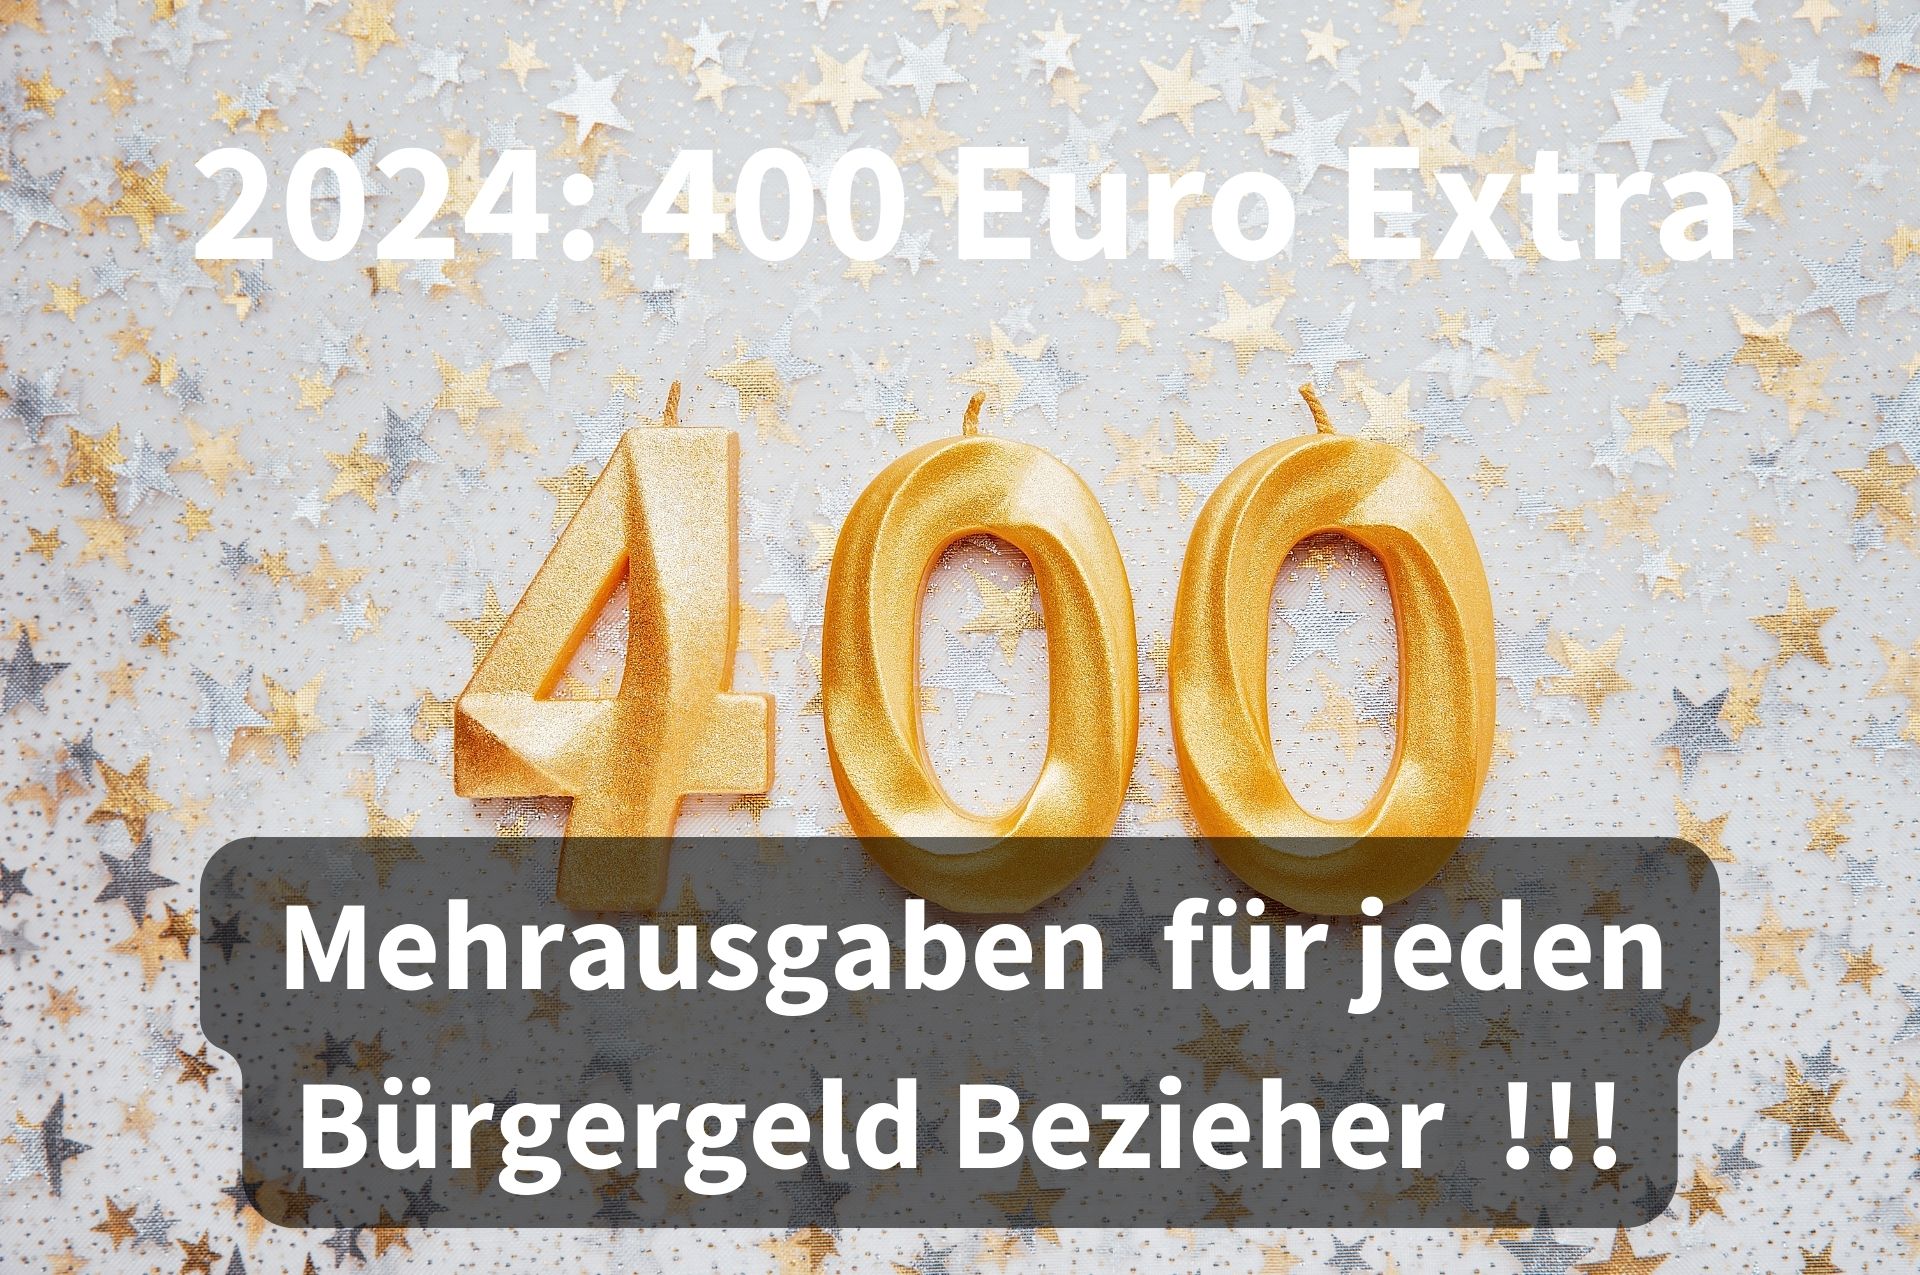 Bürgergeld: 400 Euro zusätzlich im Jahr 2024 für jeden Bezieher!